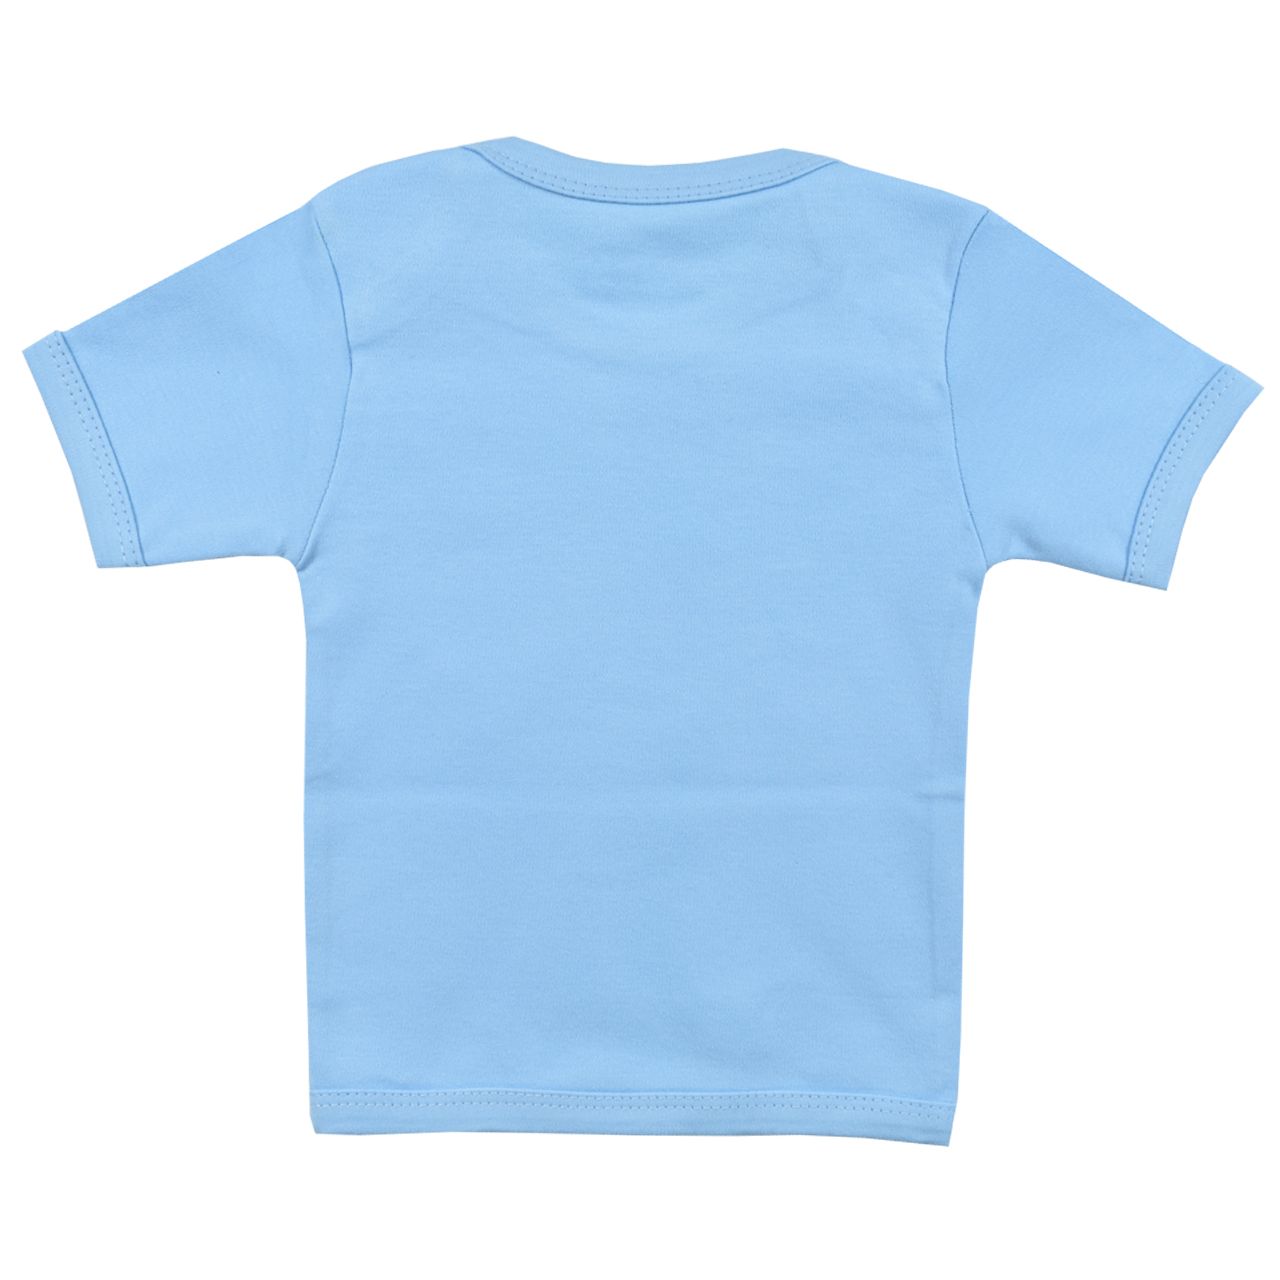 تی شرت آستین کوتاه نوزادی اسپیکو کد 300 -4 بسته دو عددی -  - 2